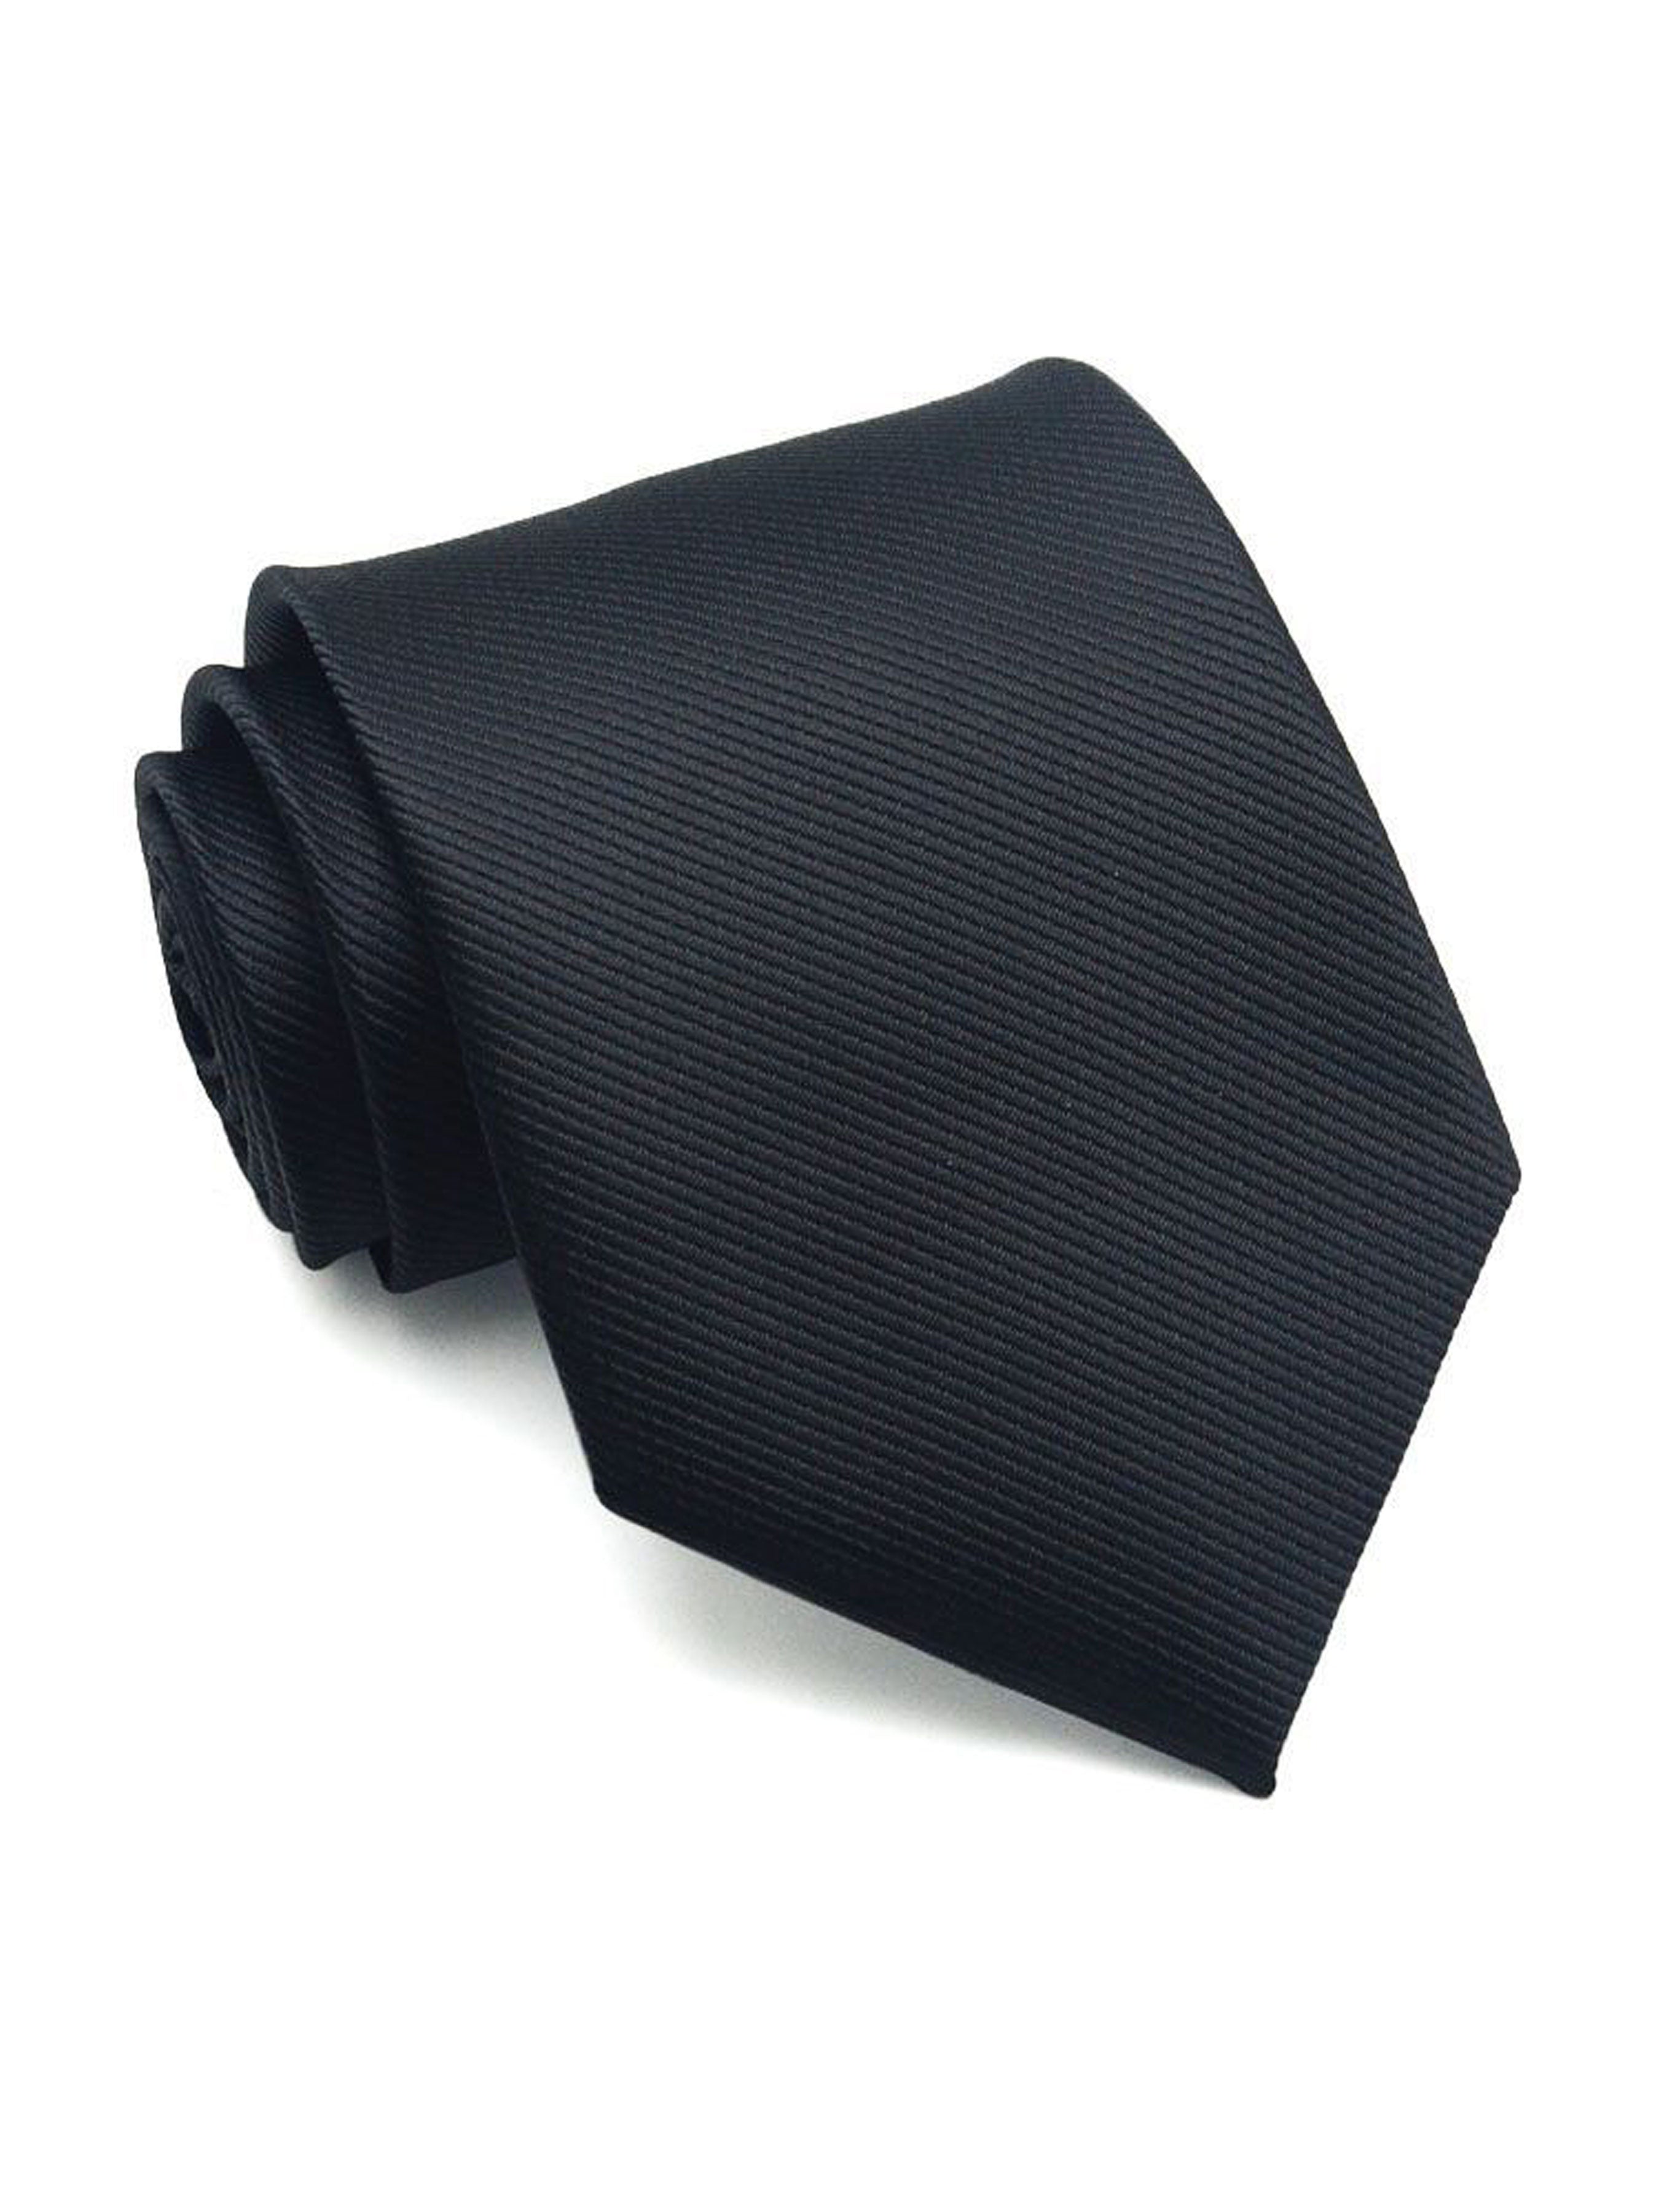 Grosgrain Solid Tie - Black - Zeve Shoes